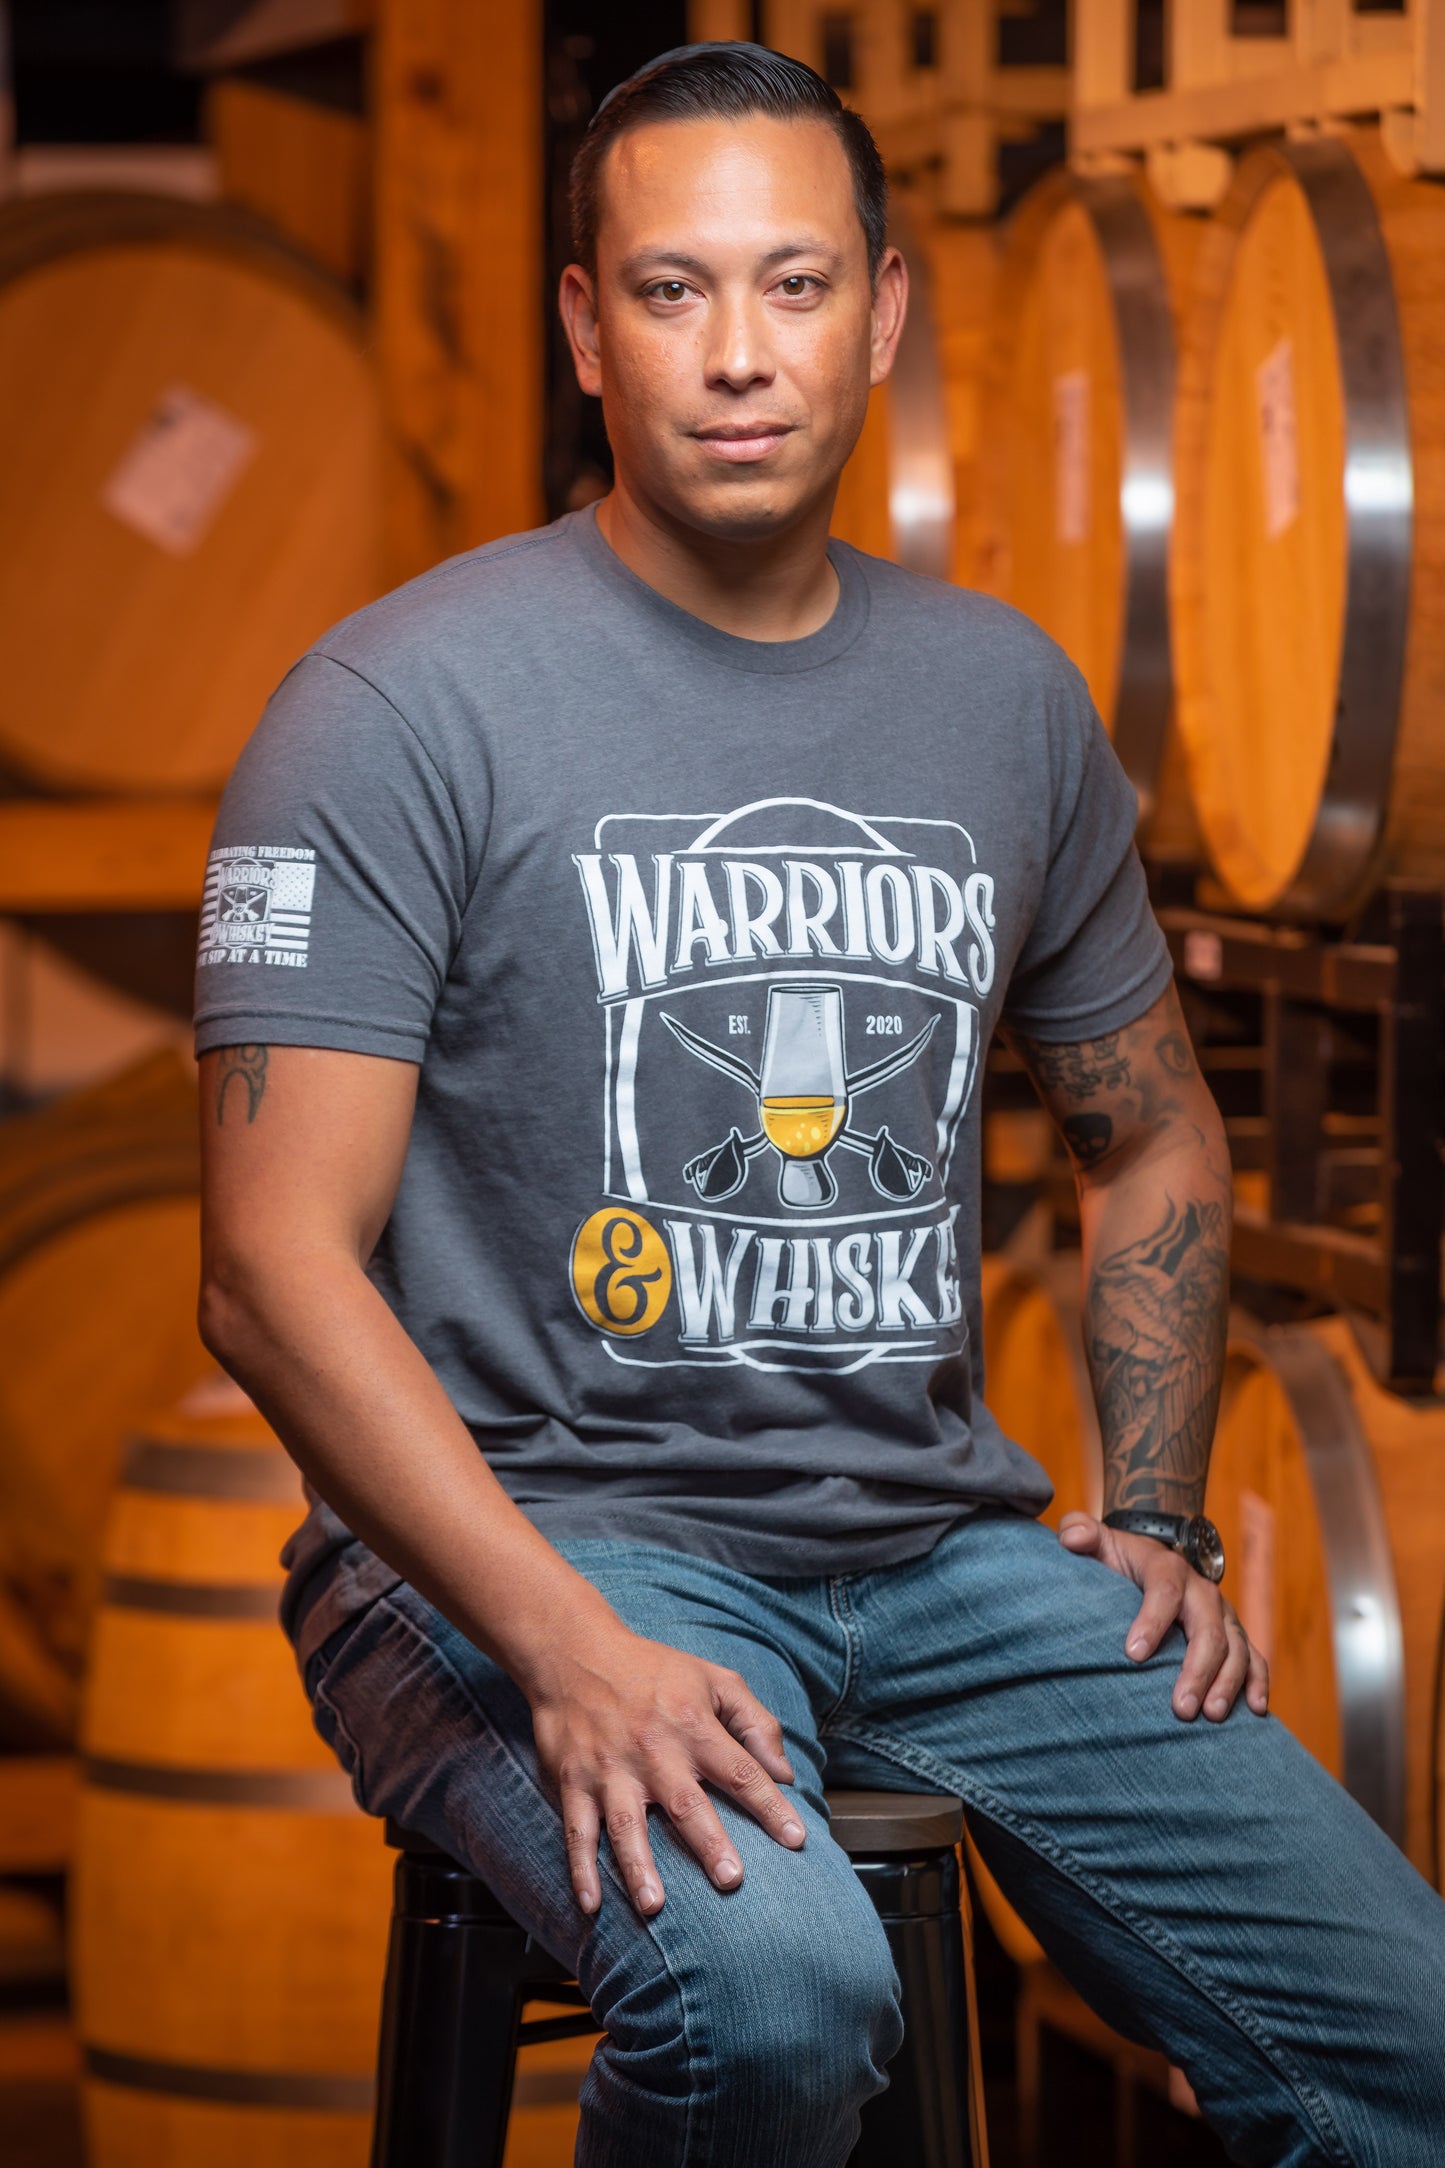 Warriors & Whiskey Classic T-shirt